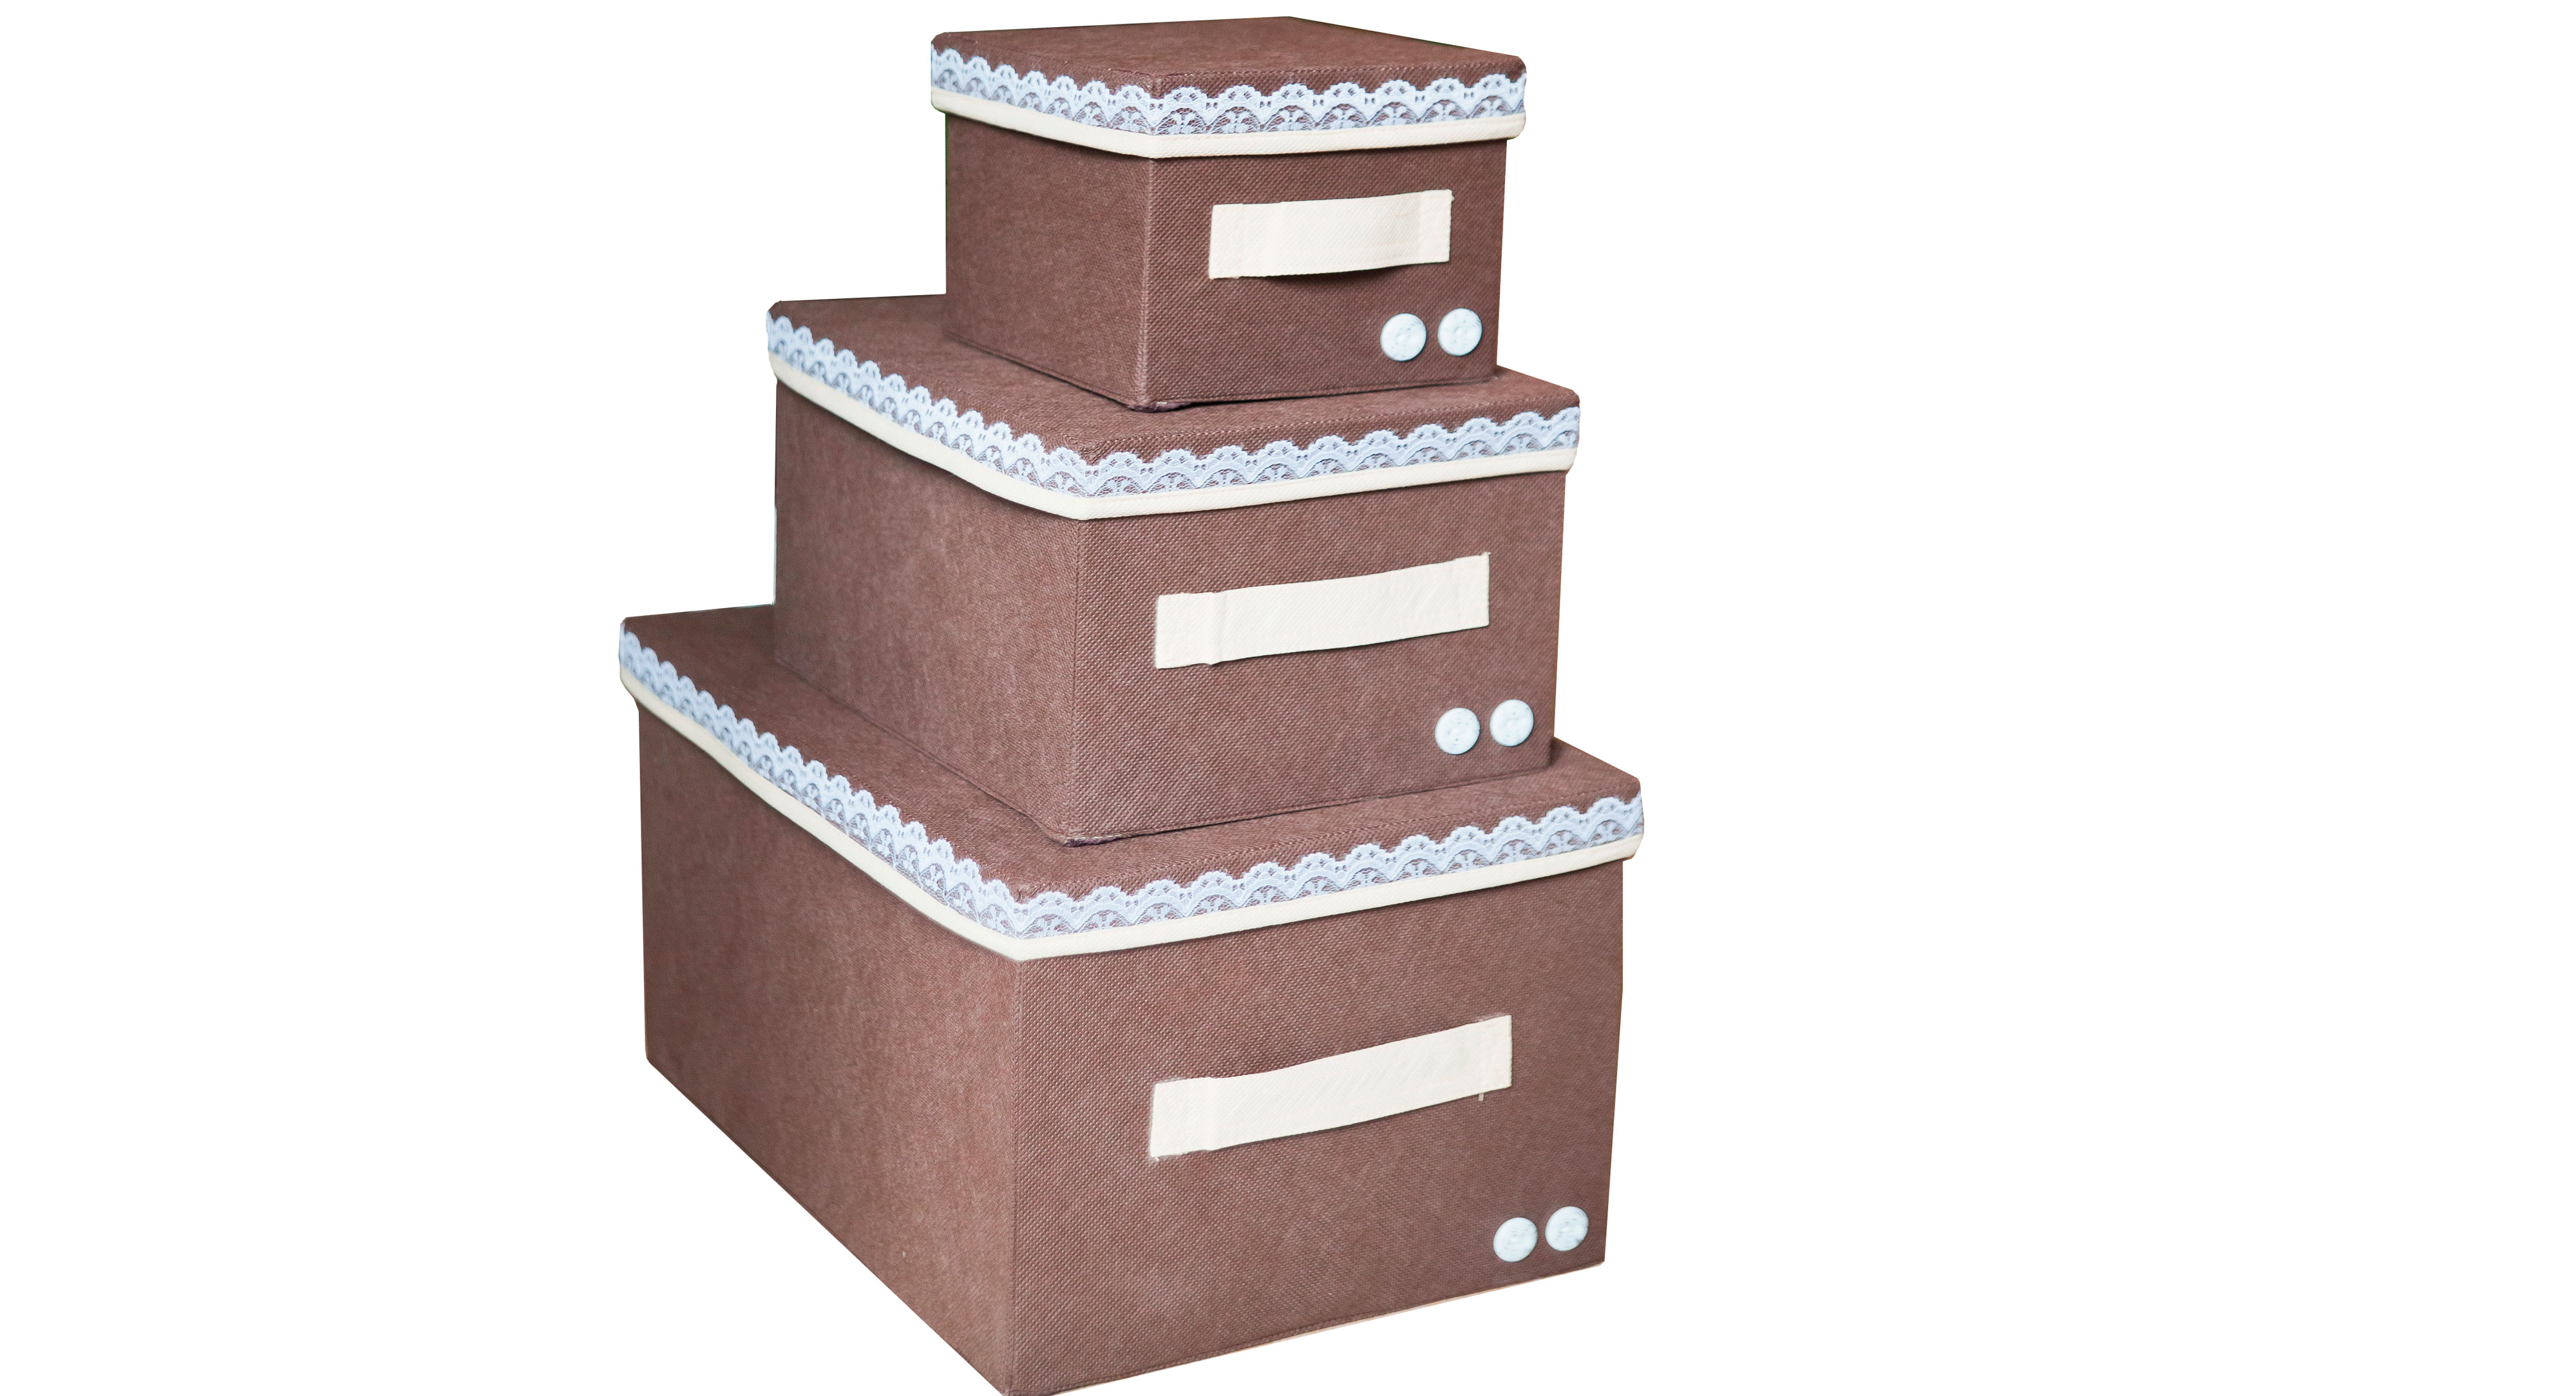 Коробка для хранения Малая "Chocolate Cake" с крышкой - ящик для хранения